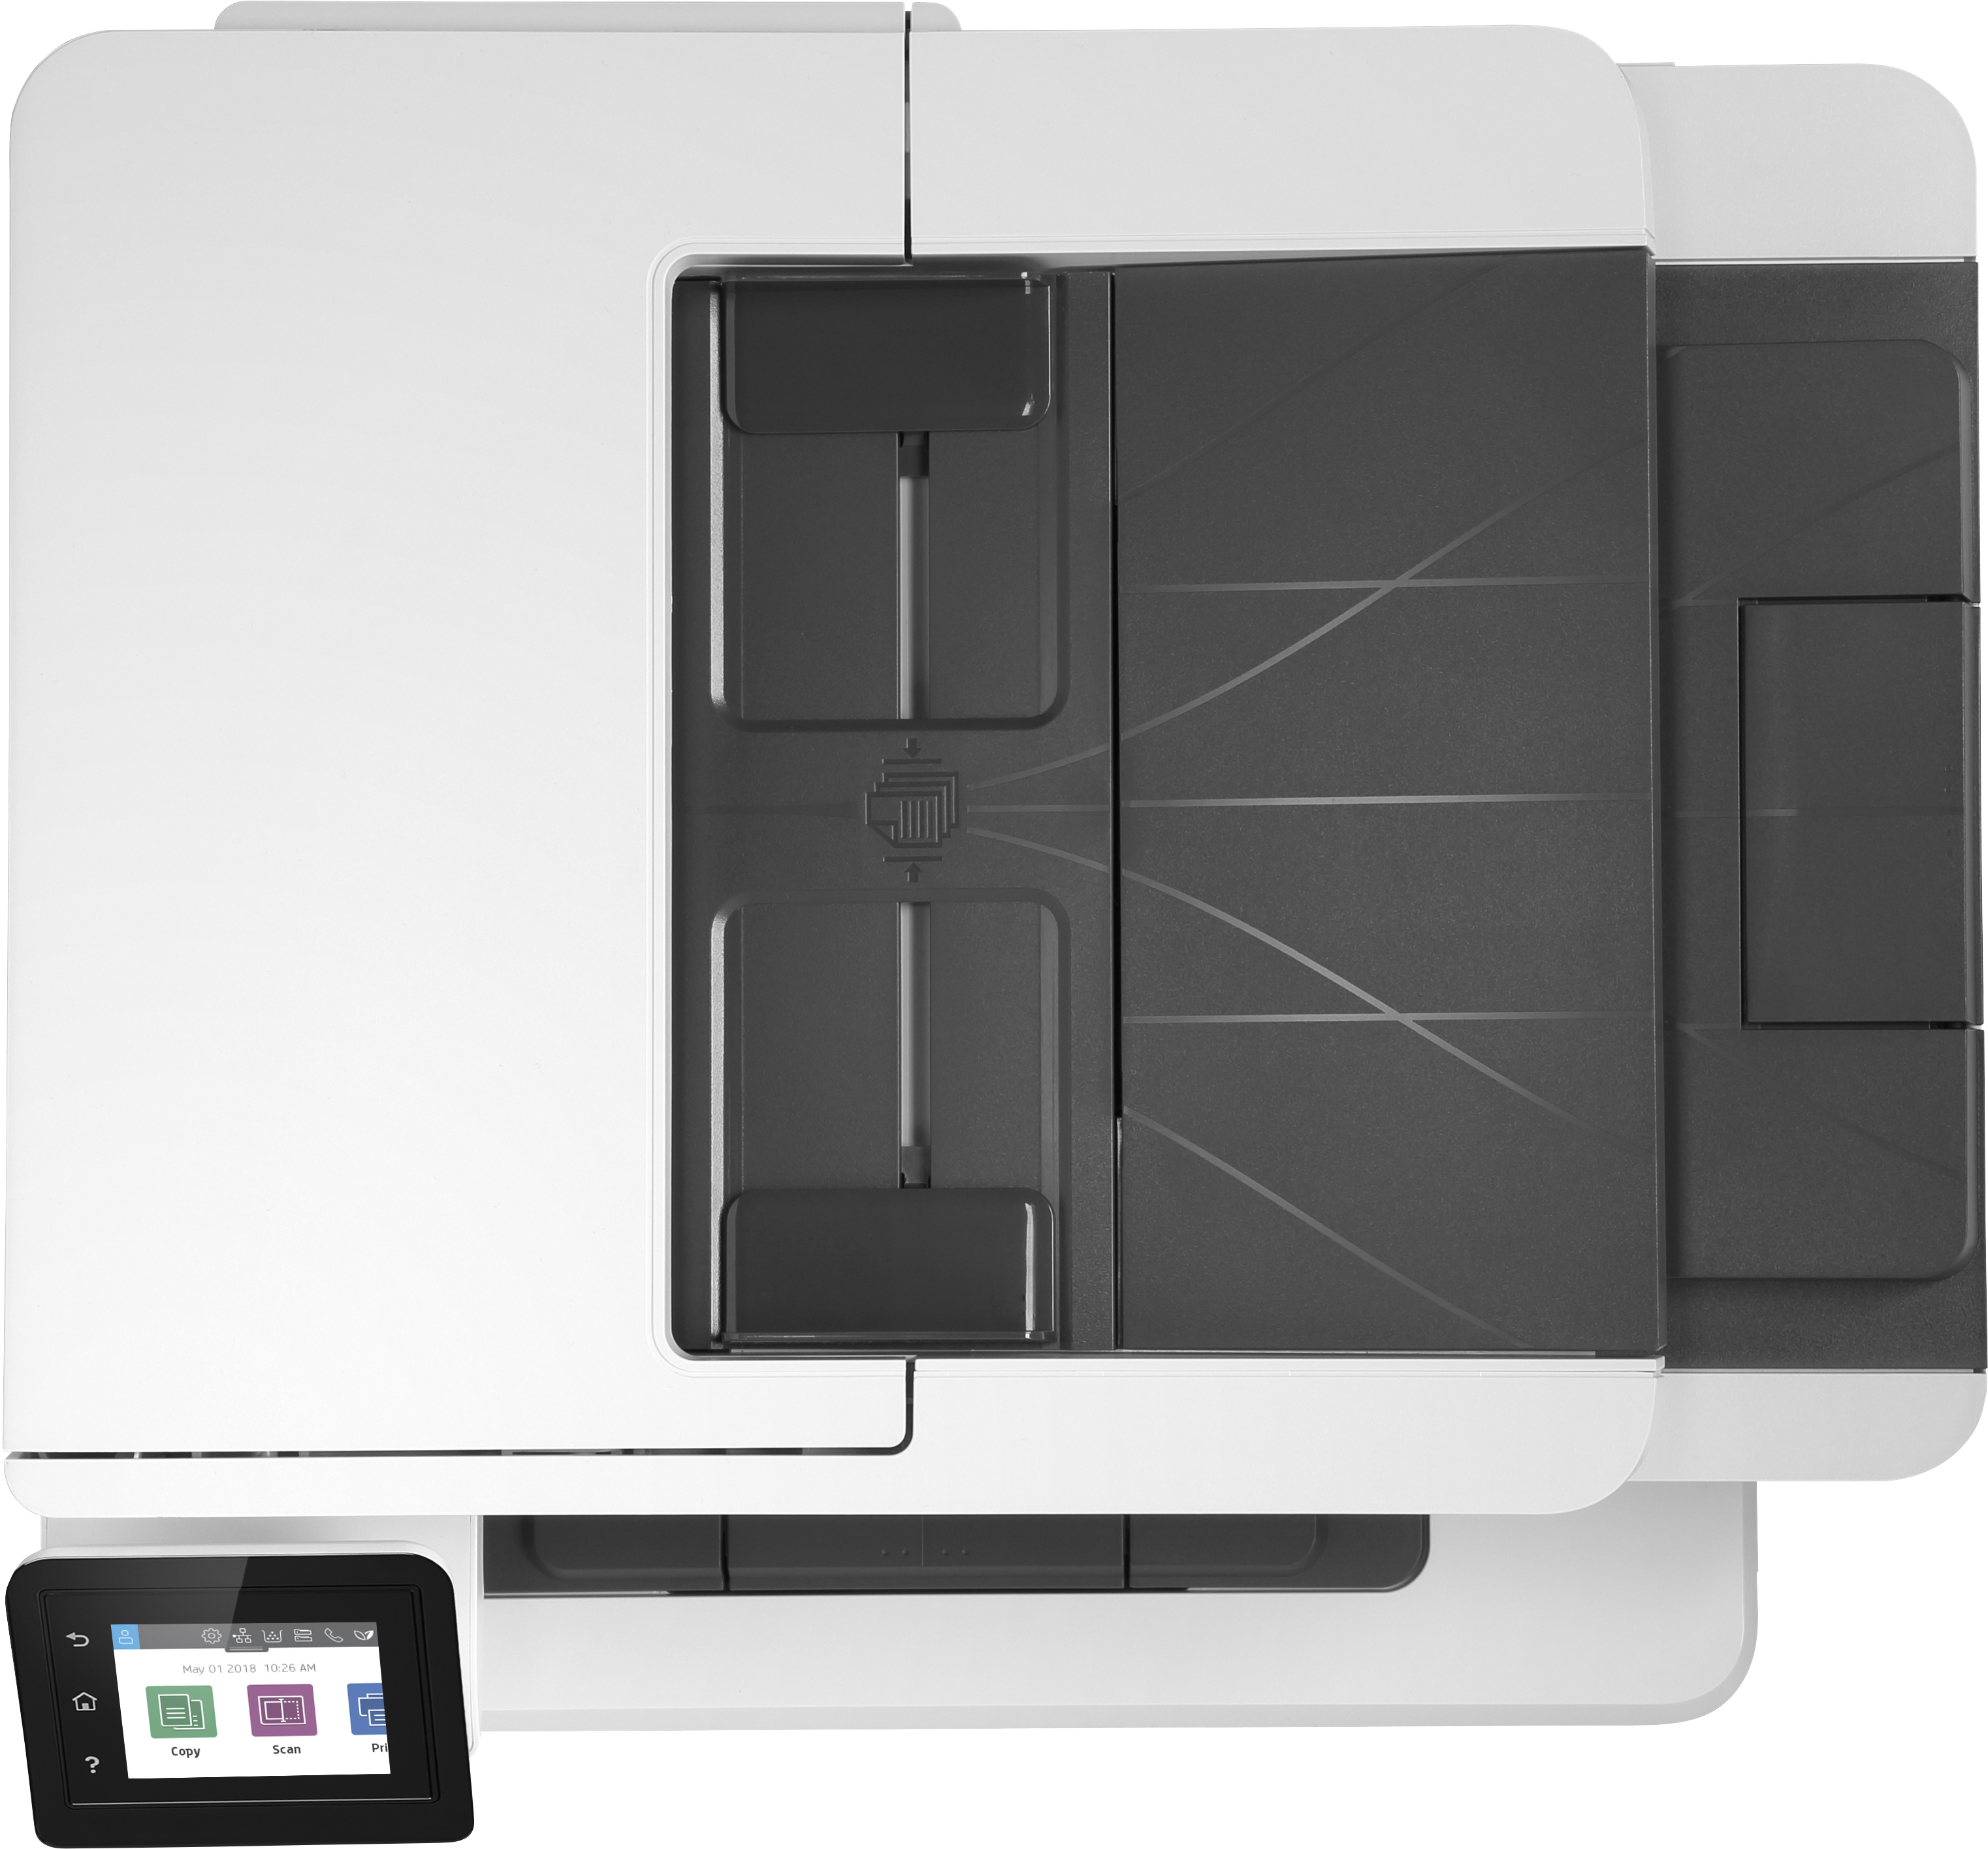 HP LaserJet Pro Stampante multifunzione M428fdn, Stampa, copia, scansione, fax, e-mail, scansione verso e-mail; fronte/retro; [W1A29A]